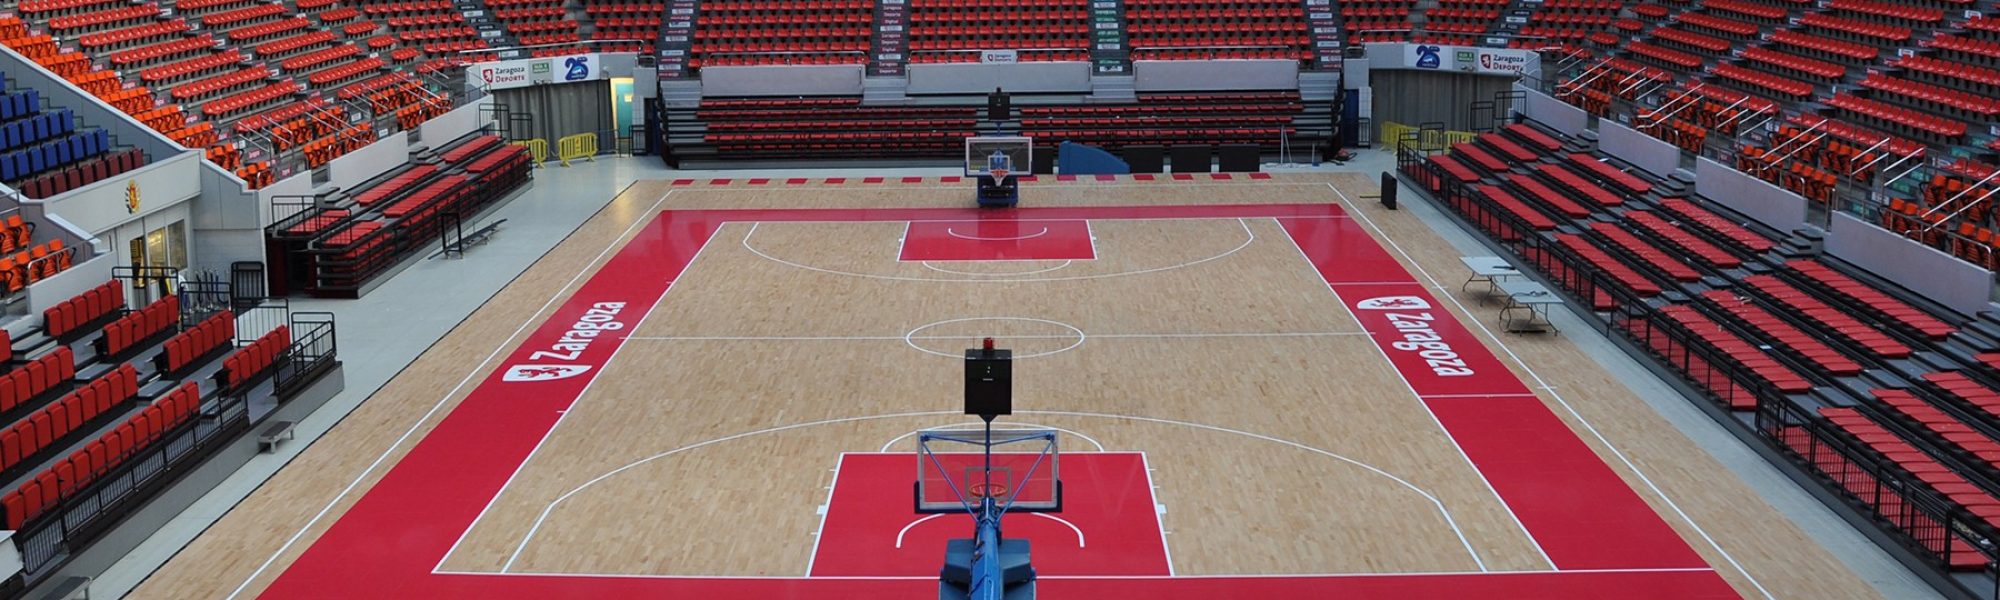 equipacion de baloncesto españa